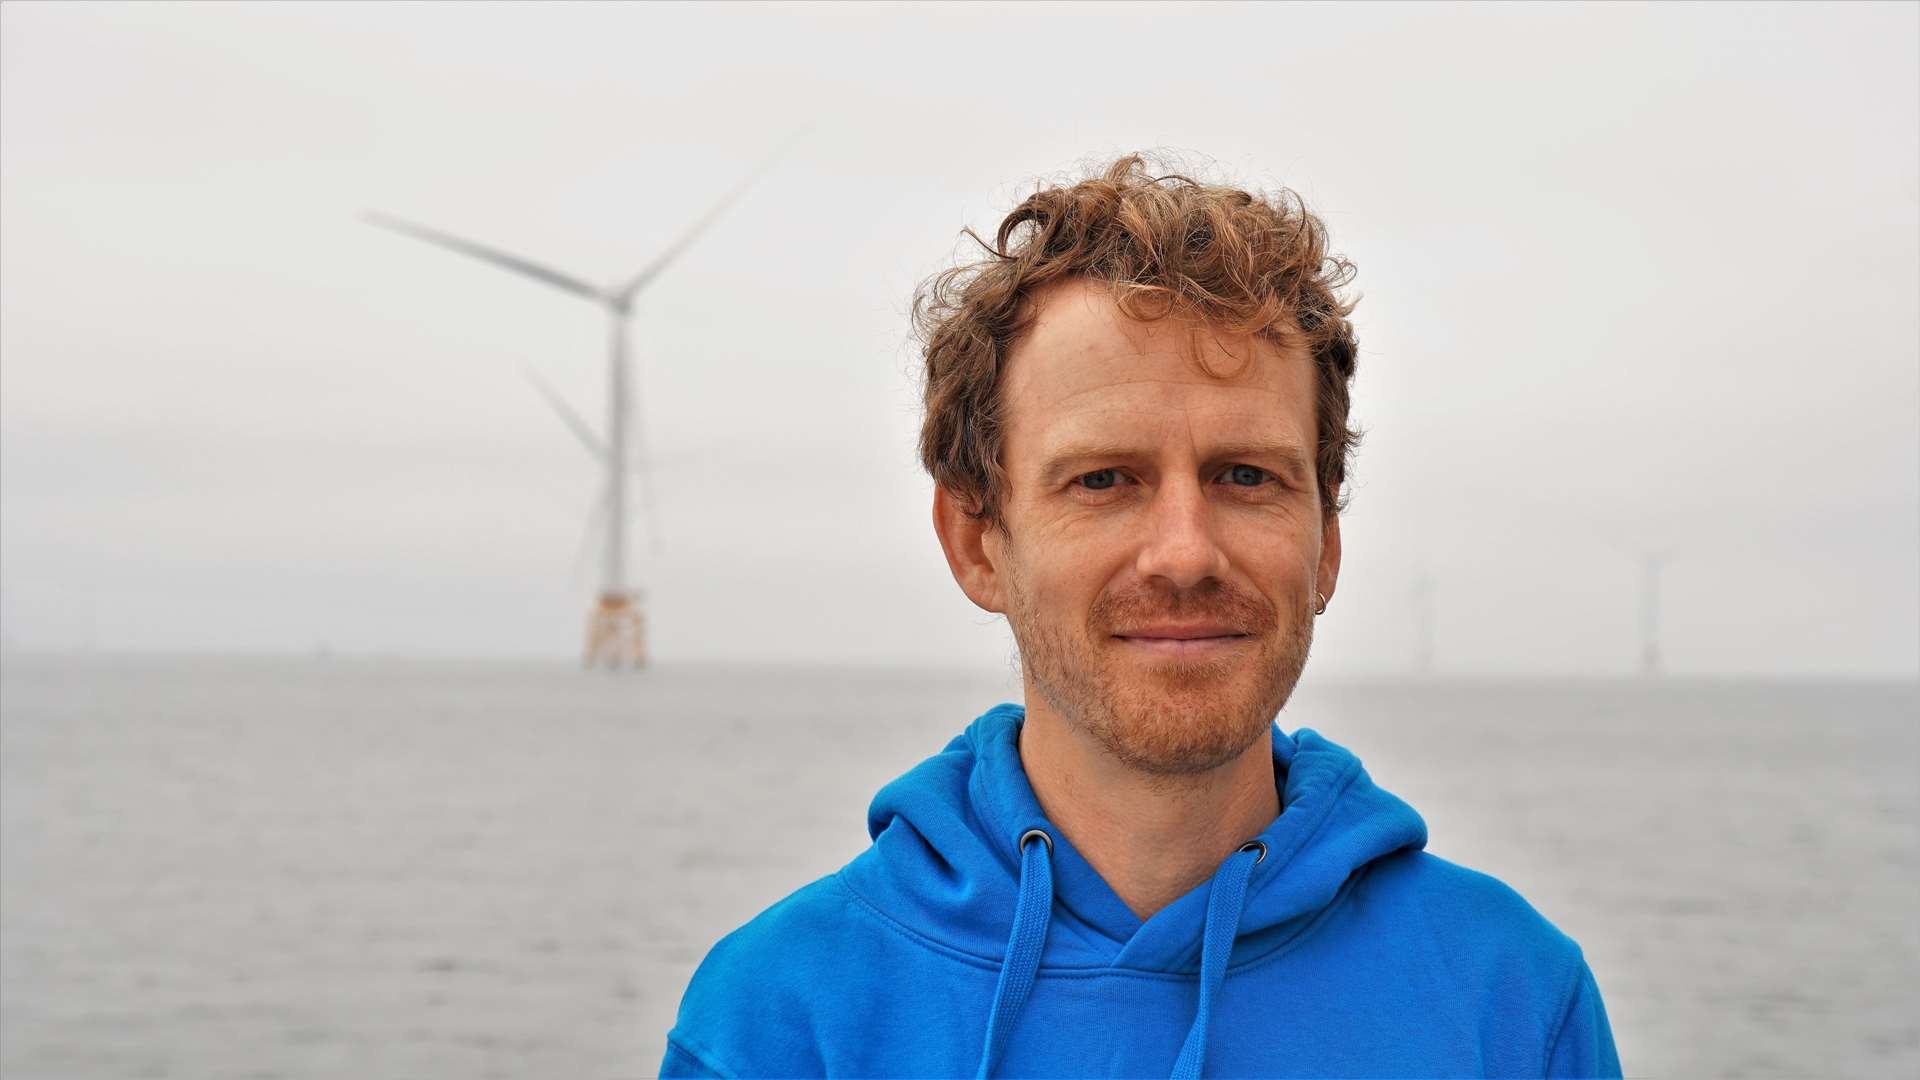 Morten Thaysen, oil campaigner for Greenpeace UK.